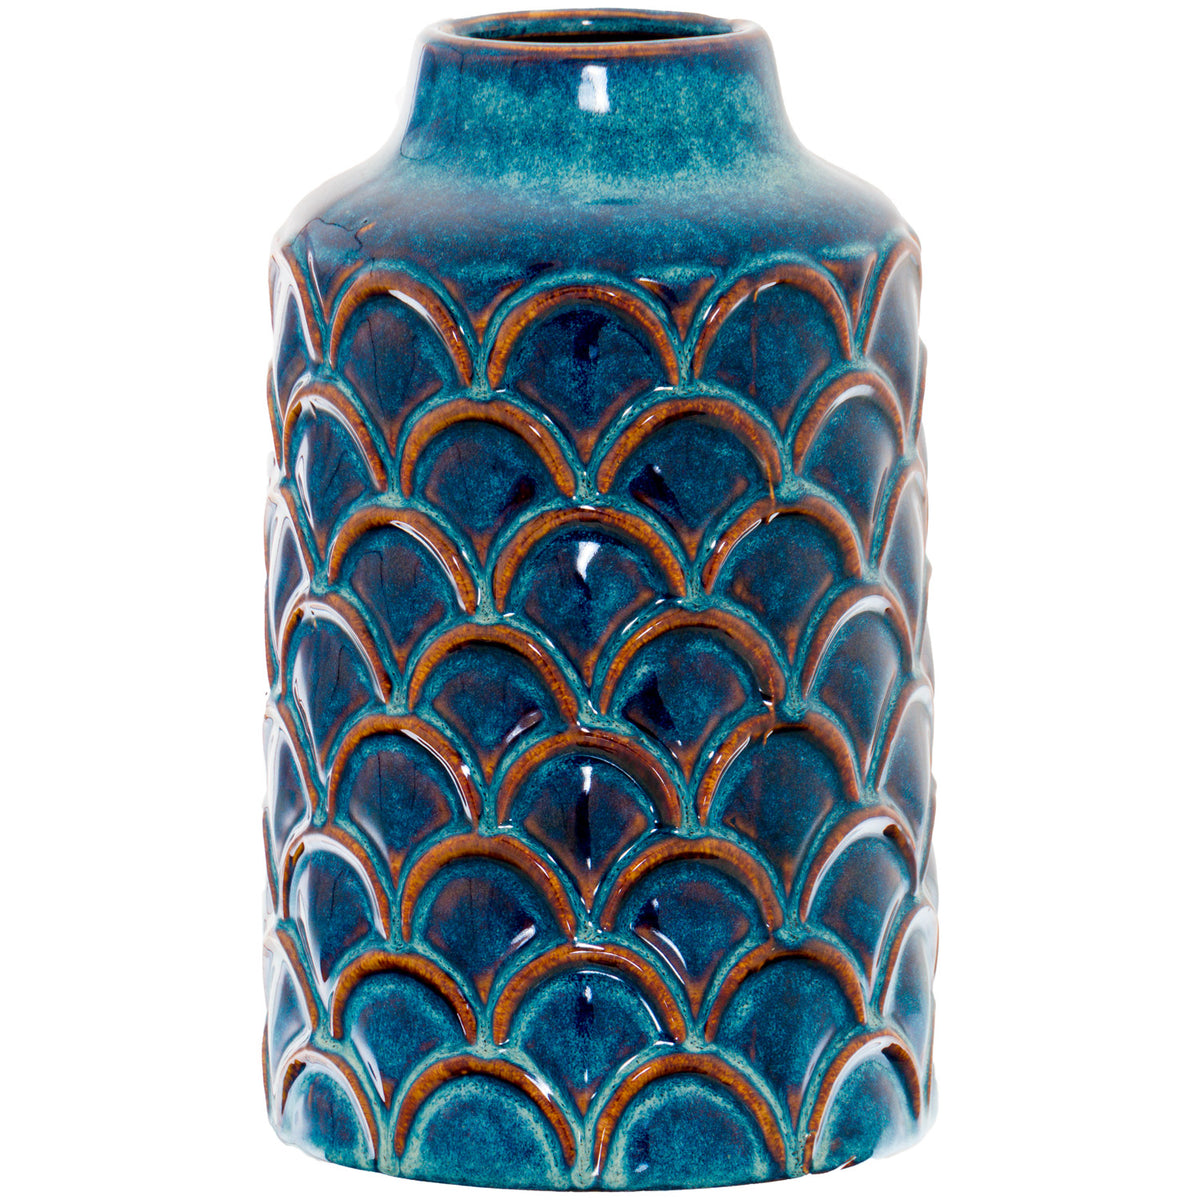 Seville Collection Scalloped Indigo Vase